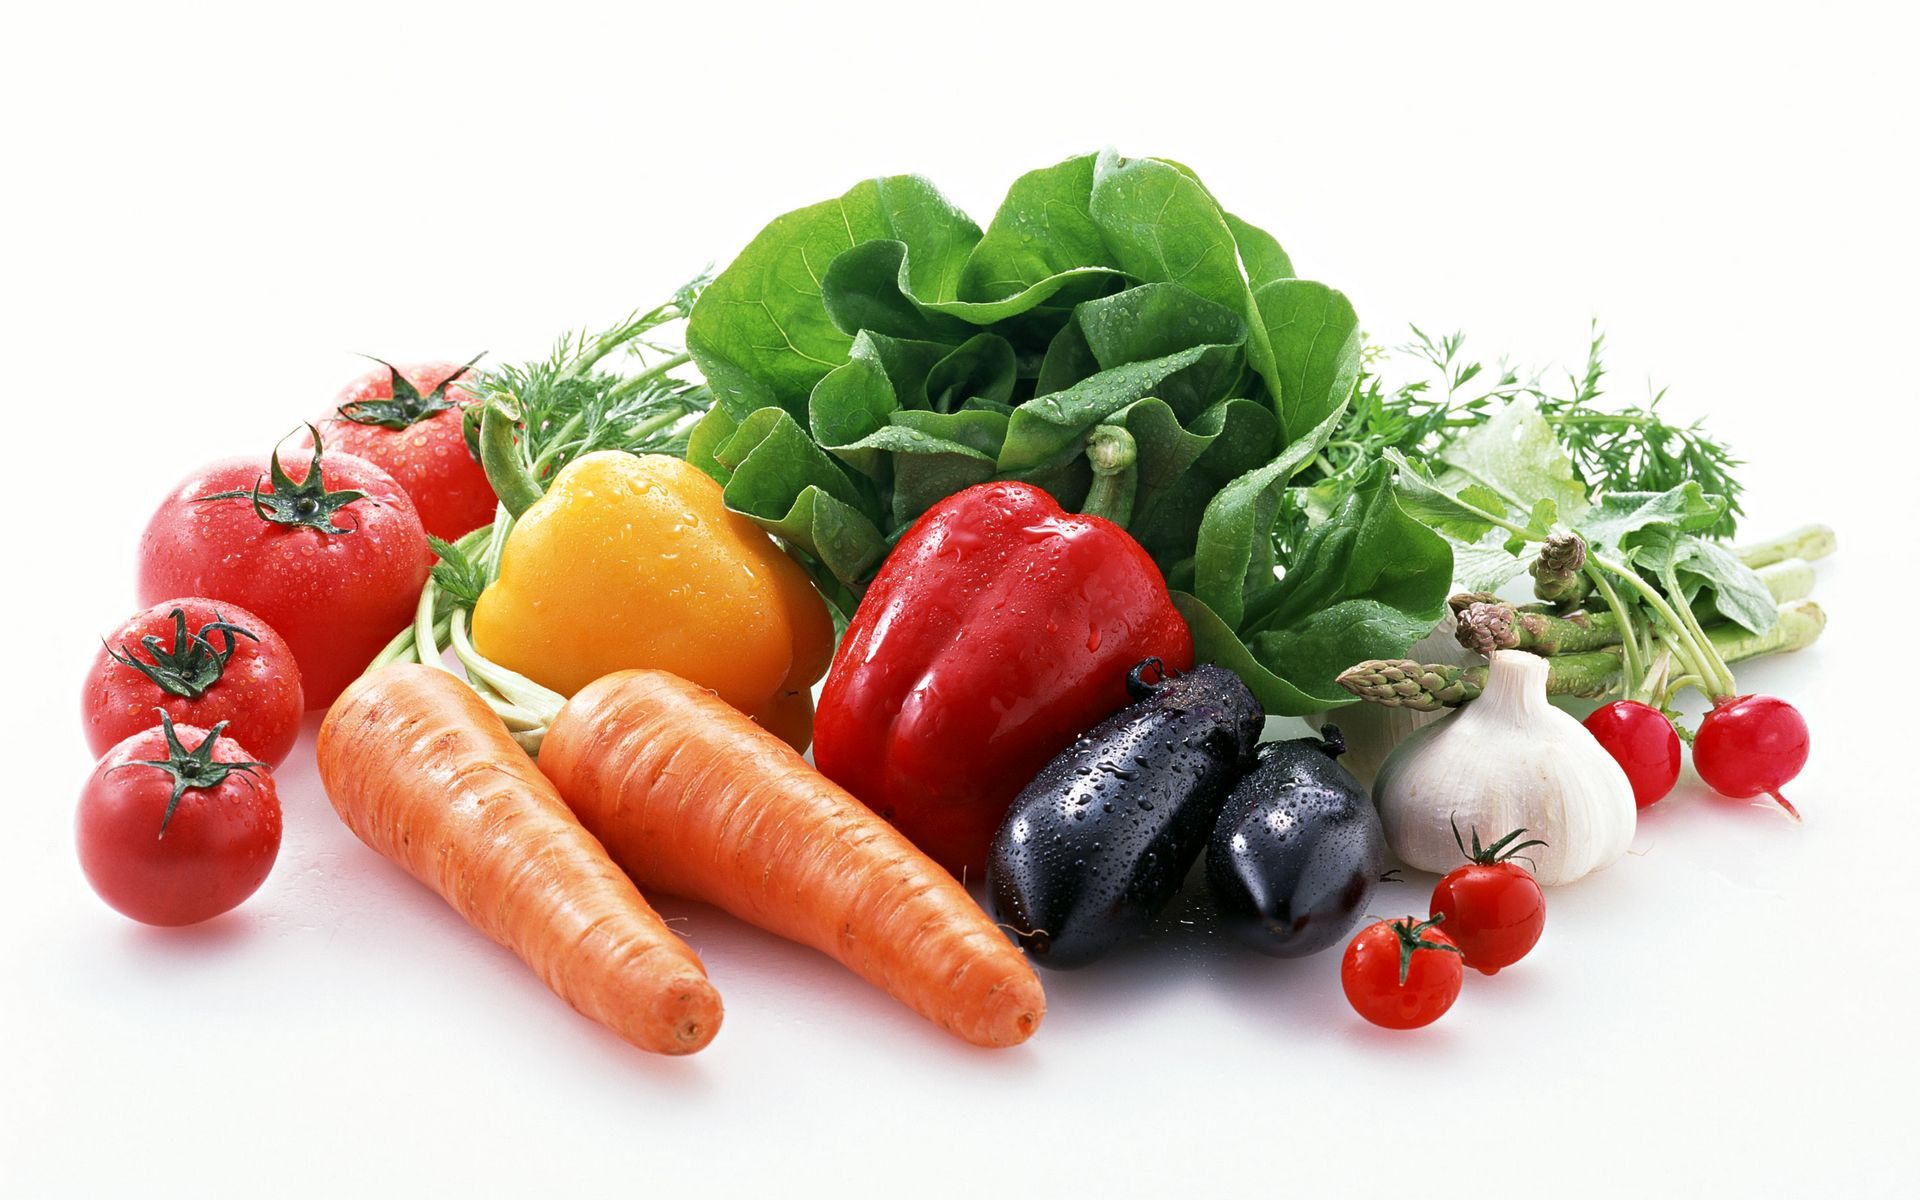 冬季飲食 補鈣多吃蔬菜